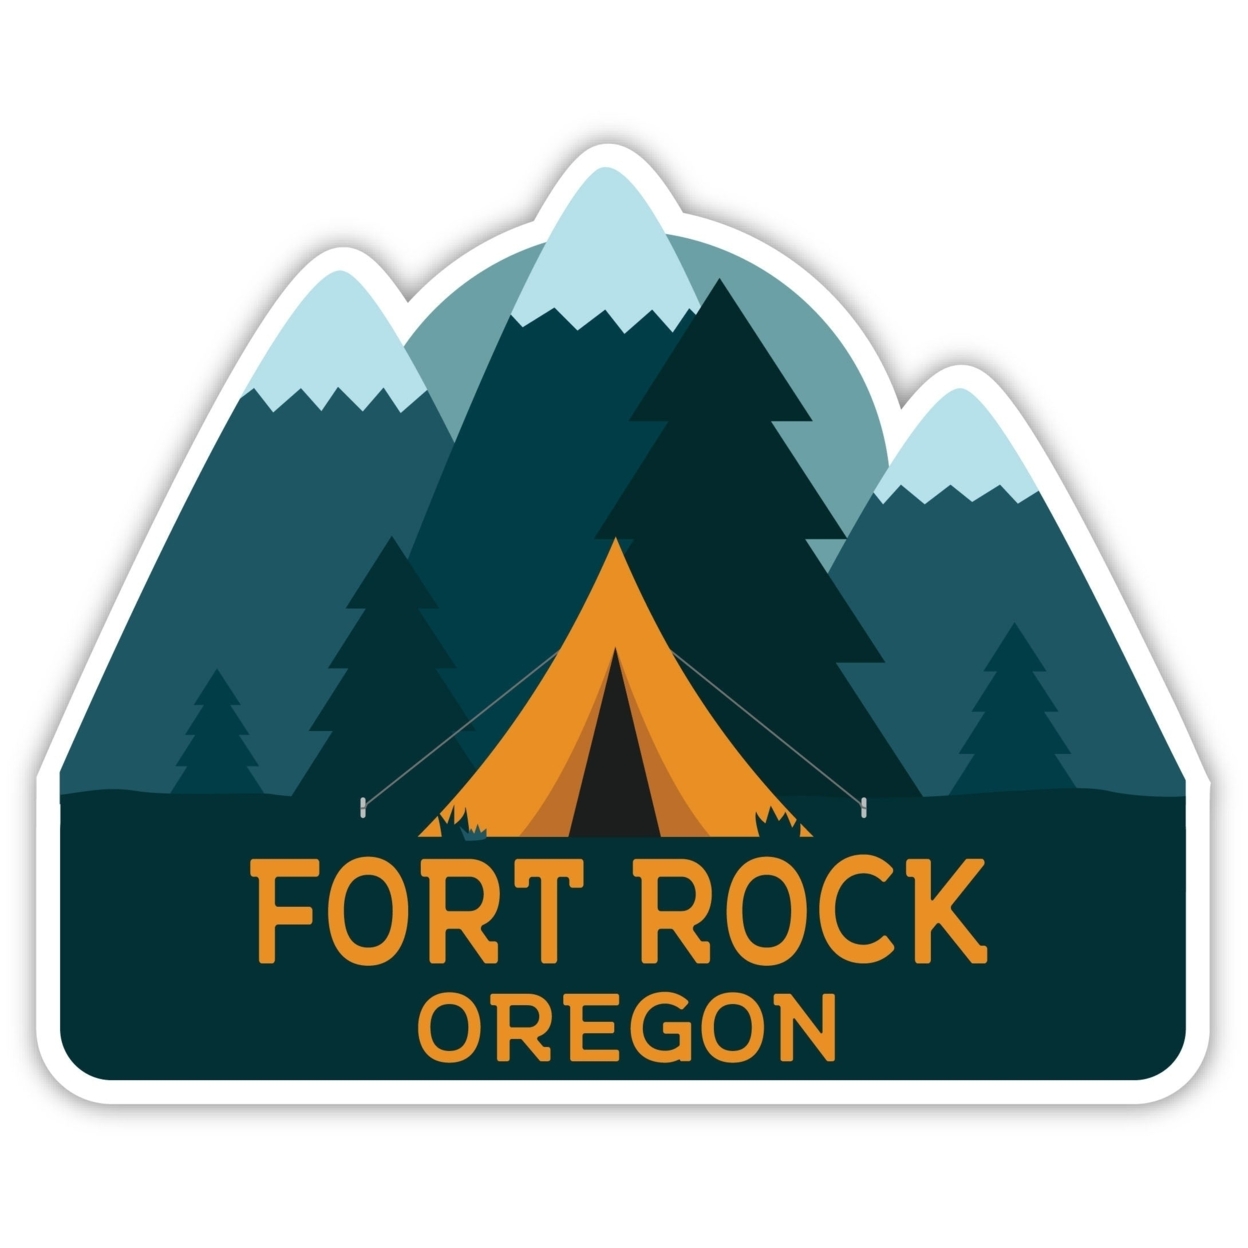 Fort Rock Oregon Souvenir Decorative Stickers (Choose Theme And Size) - Single Unit, 6-Inch, Tent